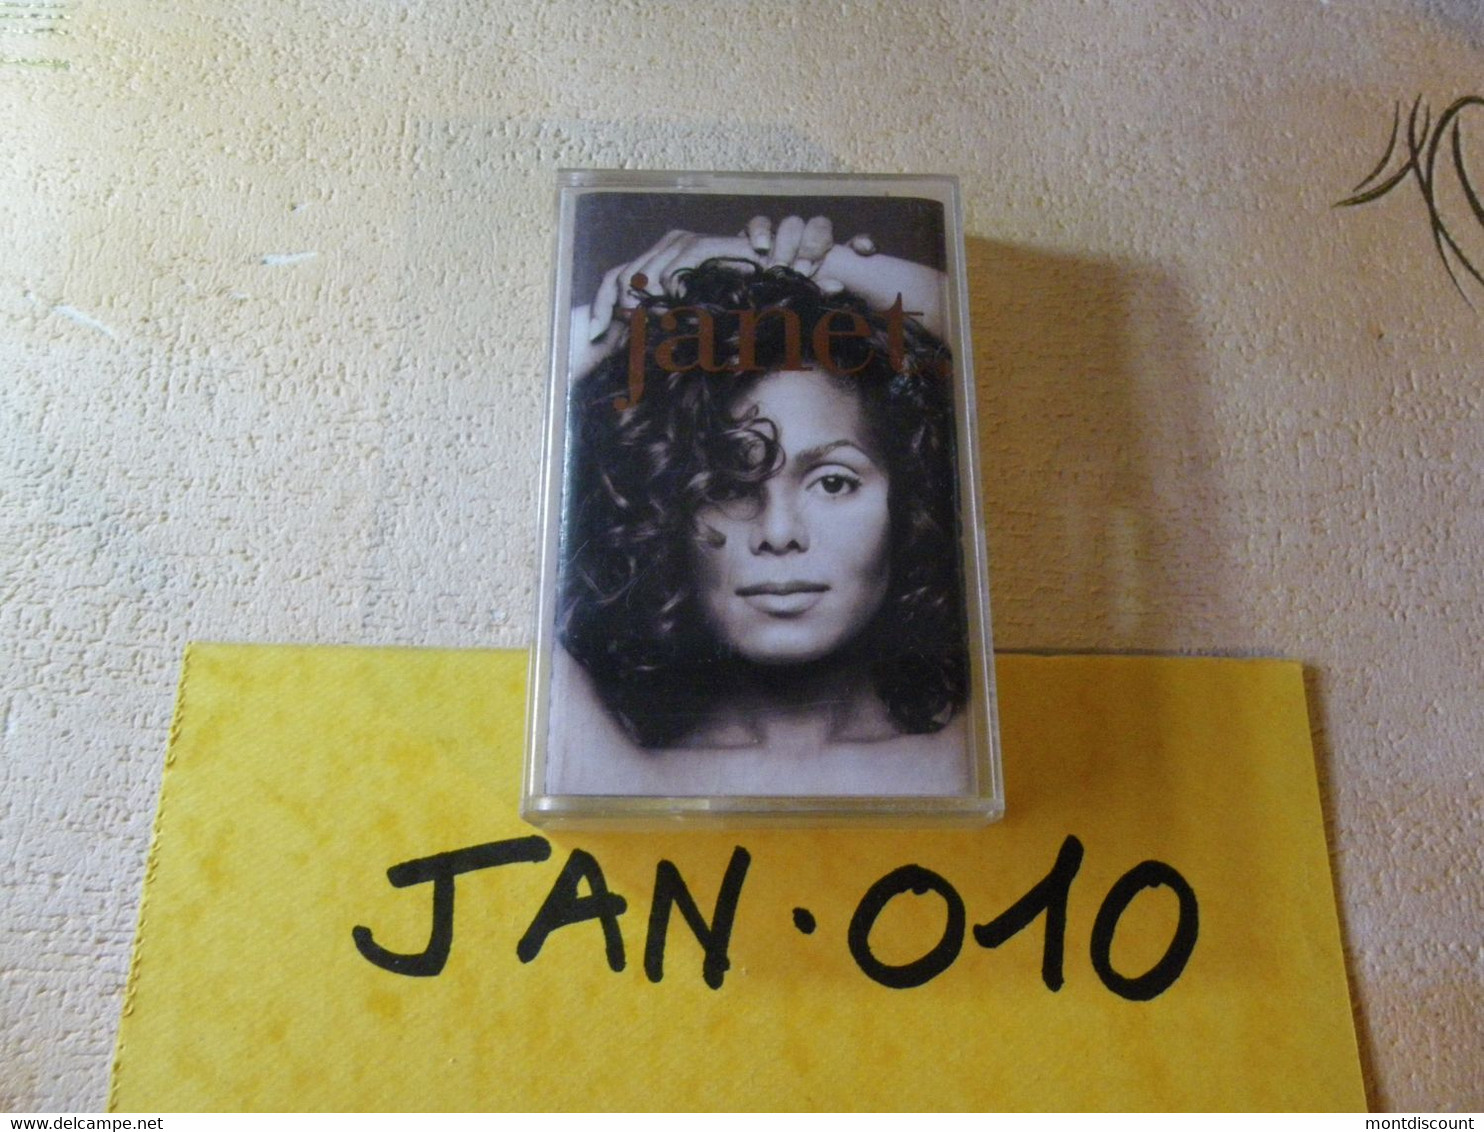 JANET JACKSON K7 VOIR PHOTO... (JAN 010) - Cassettes Audio